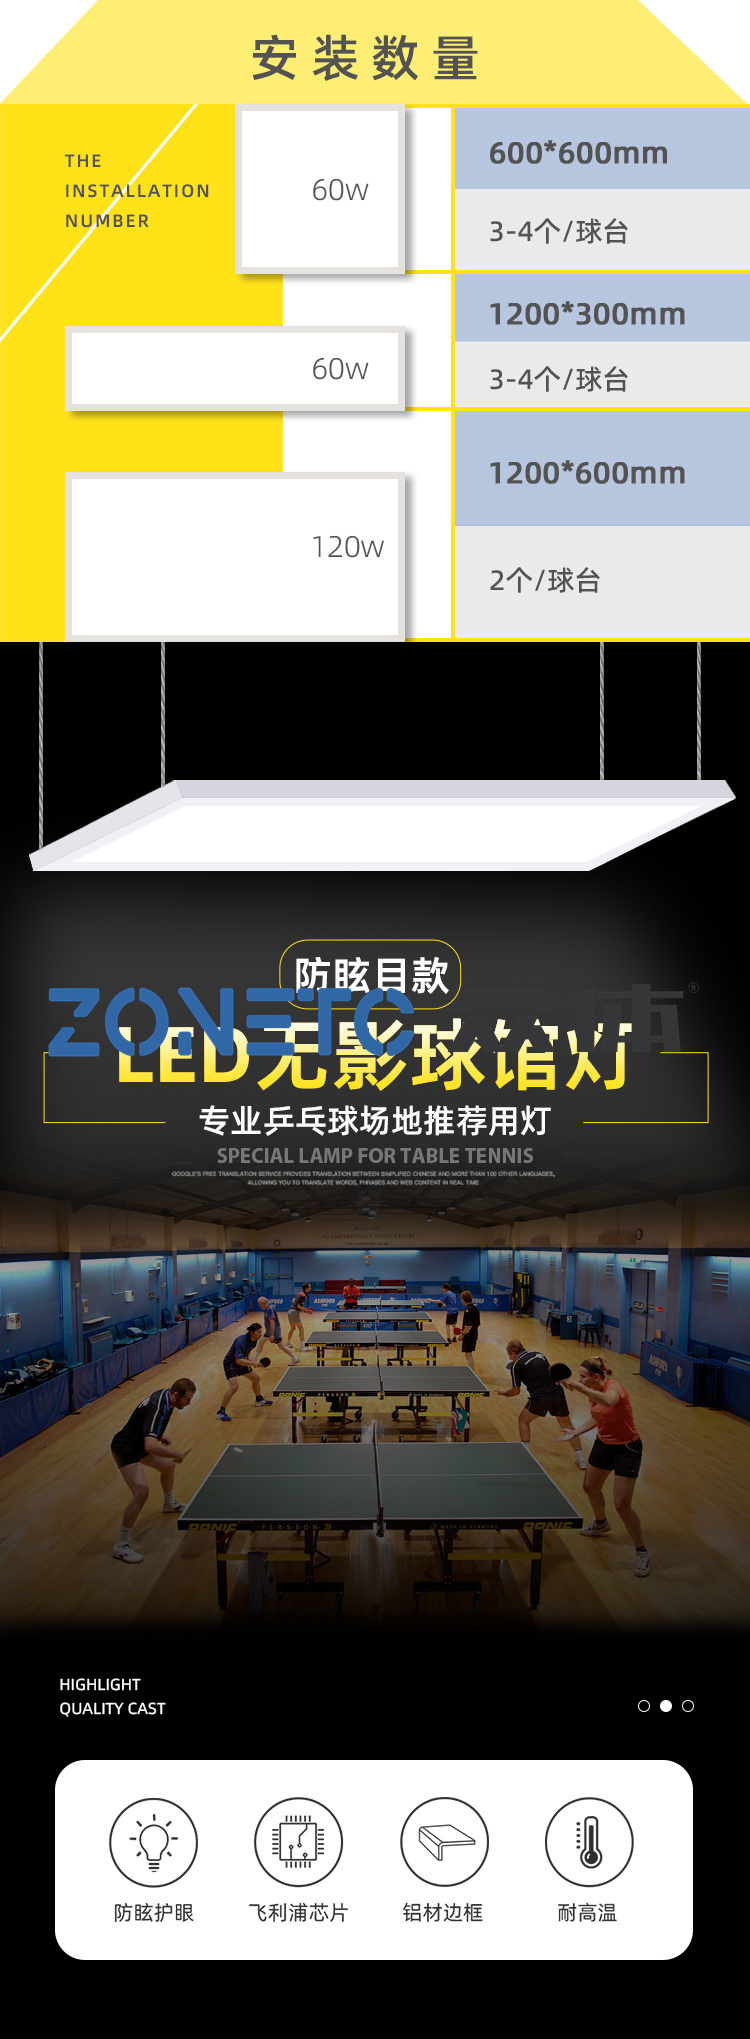 机关乒乓球活动室照明灯|LED乒乓球场灯具安装|100W乒乓球场灯有多亮 乒乓球馆灯 led灯